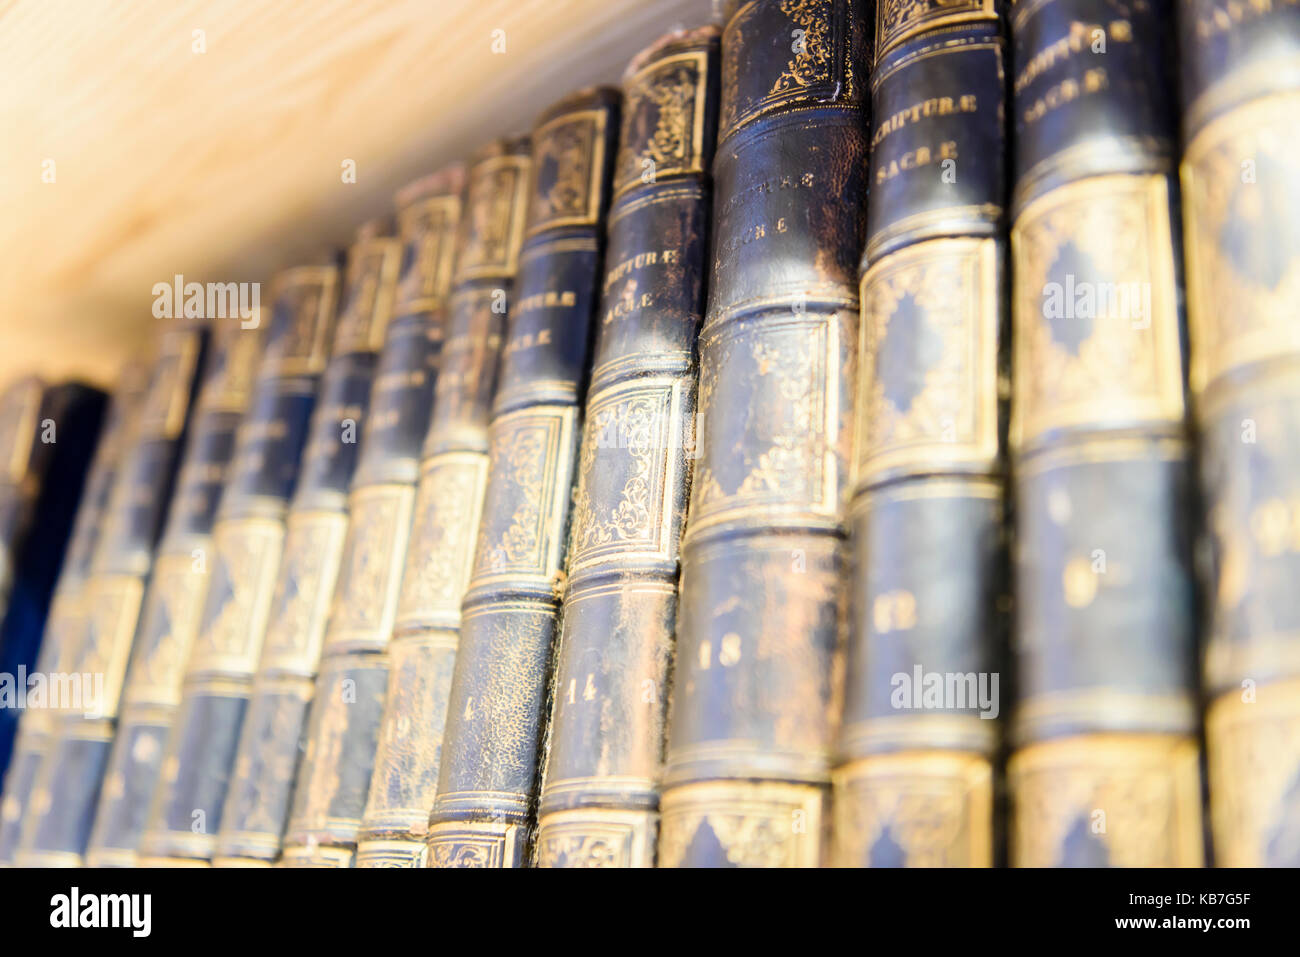 Old Irish théologie livres dans une bibliothèque spécialisée dans l'histoire de l'Irlande. Banque D'Images